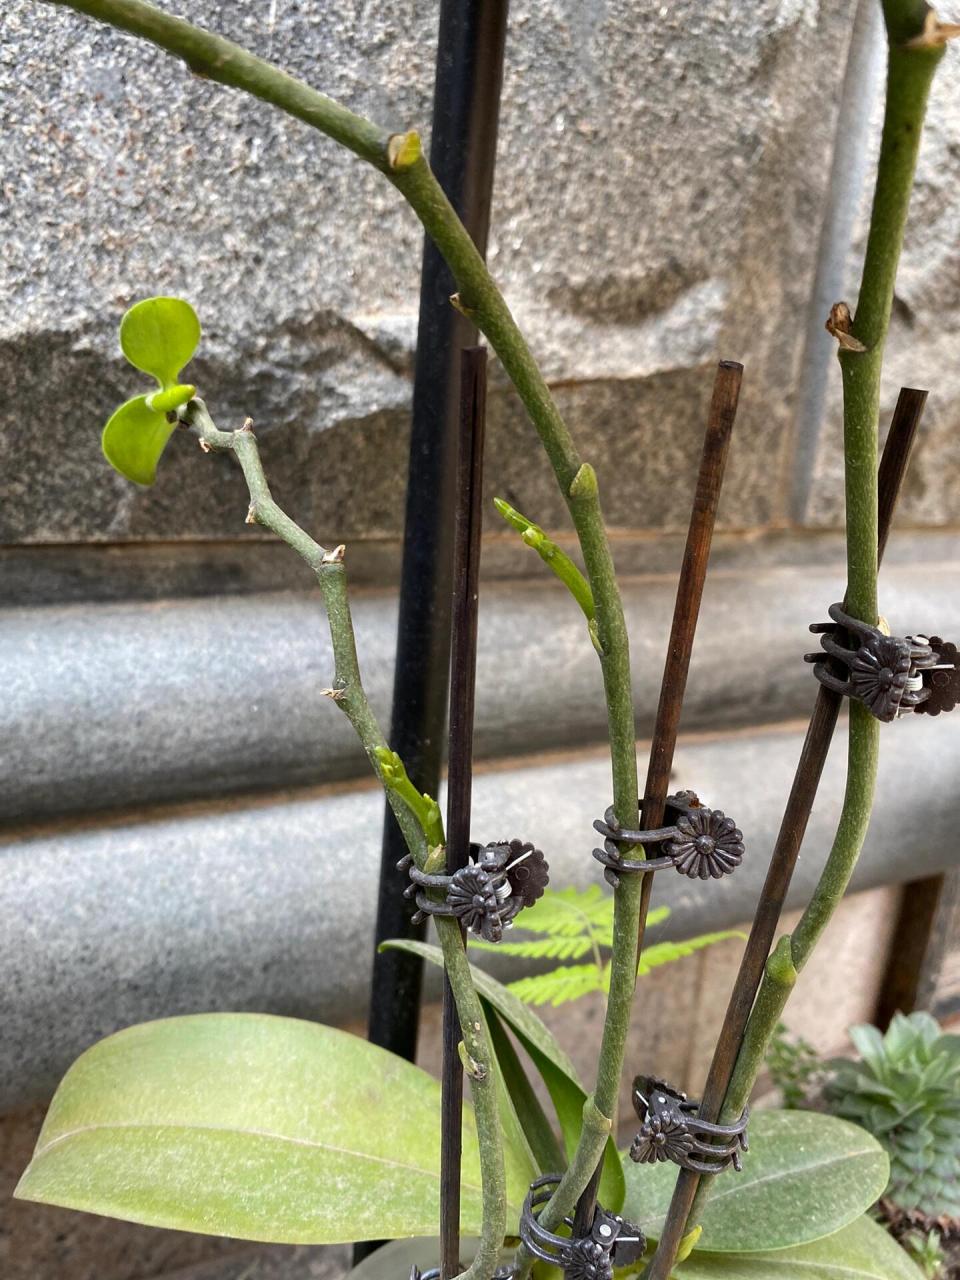 蝴蝶兰原来的花剑上长出了新芽,还没剪下来放水苔花杯里,开春新芽上又